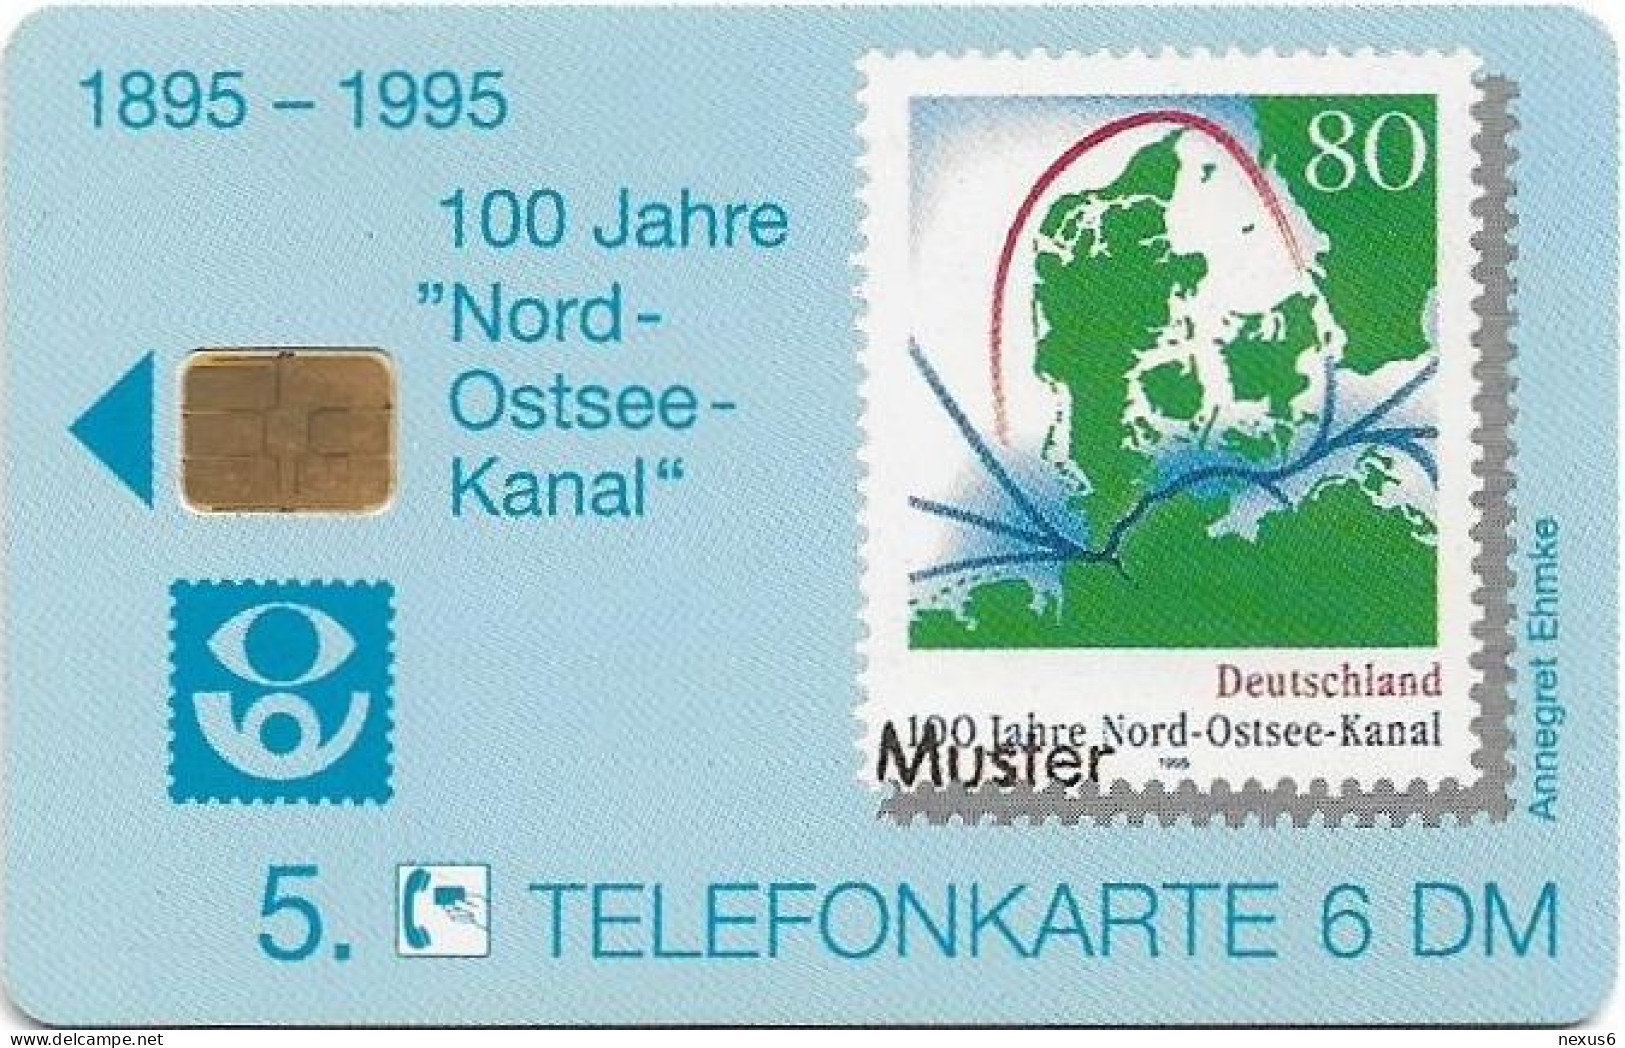 Germany - Kieler Philatelisten-Verein (100 Jahre Nord-Ostsee-Kanal) - O 0994 - 06.1995, 6DM, 1.000ex, Mint - O-Series: Kundenserie Vom Sammlerservice Ausgeschlossen